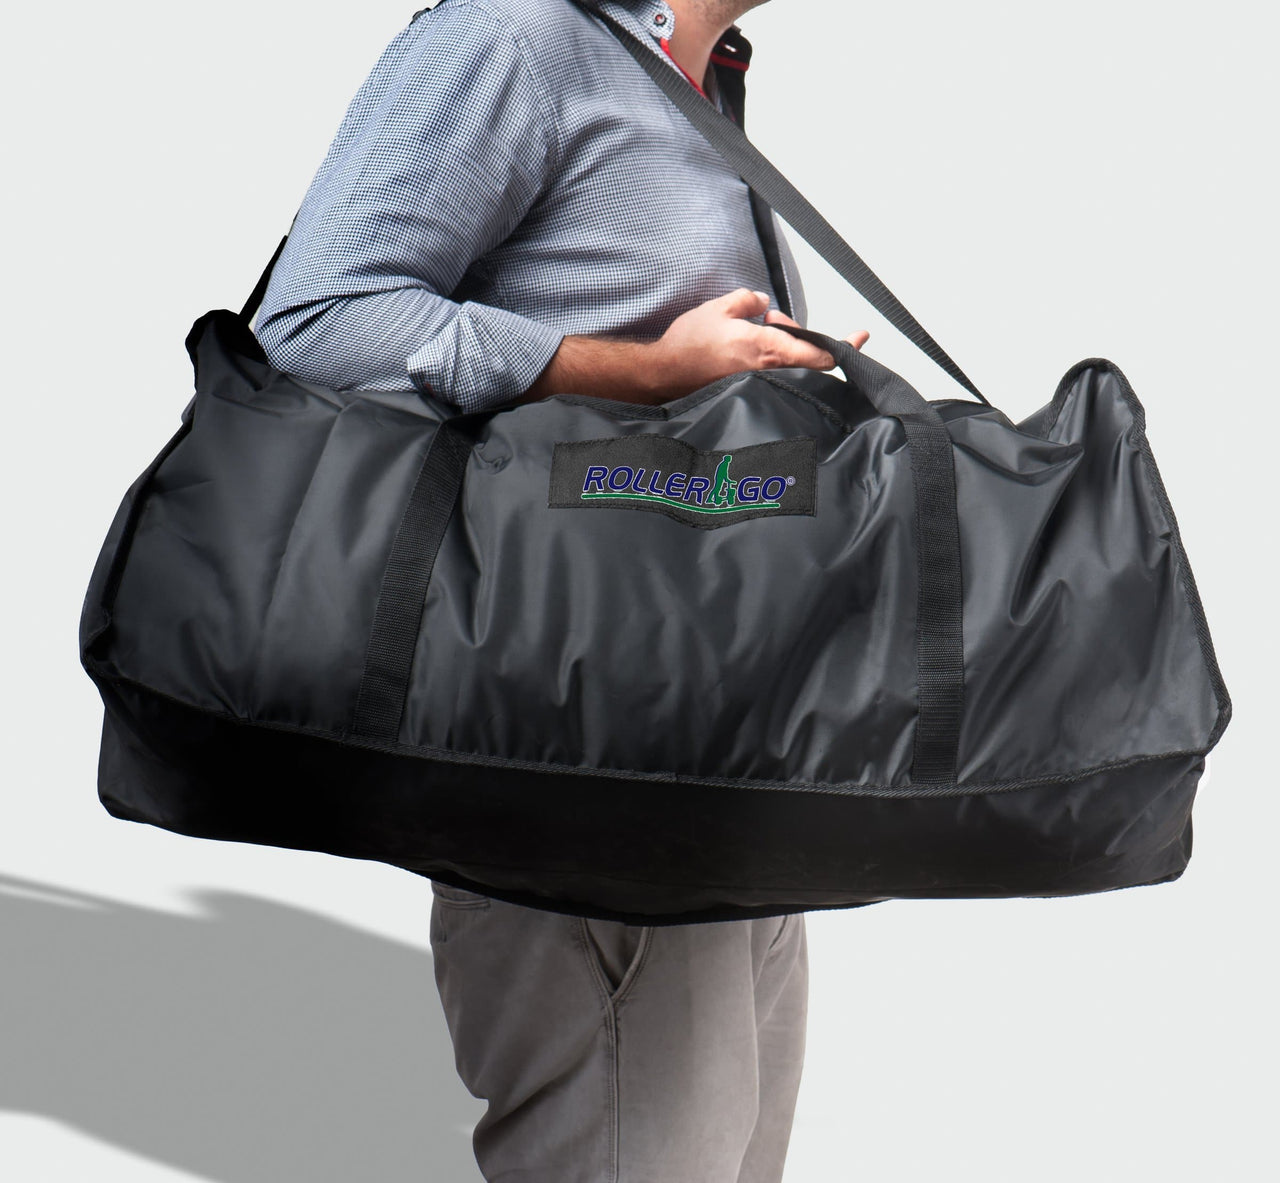 Ergoactives Roller-Go Travel Bag - Senior.com 